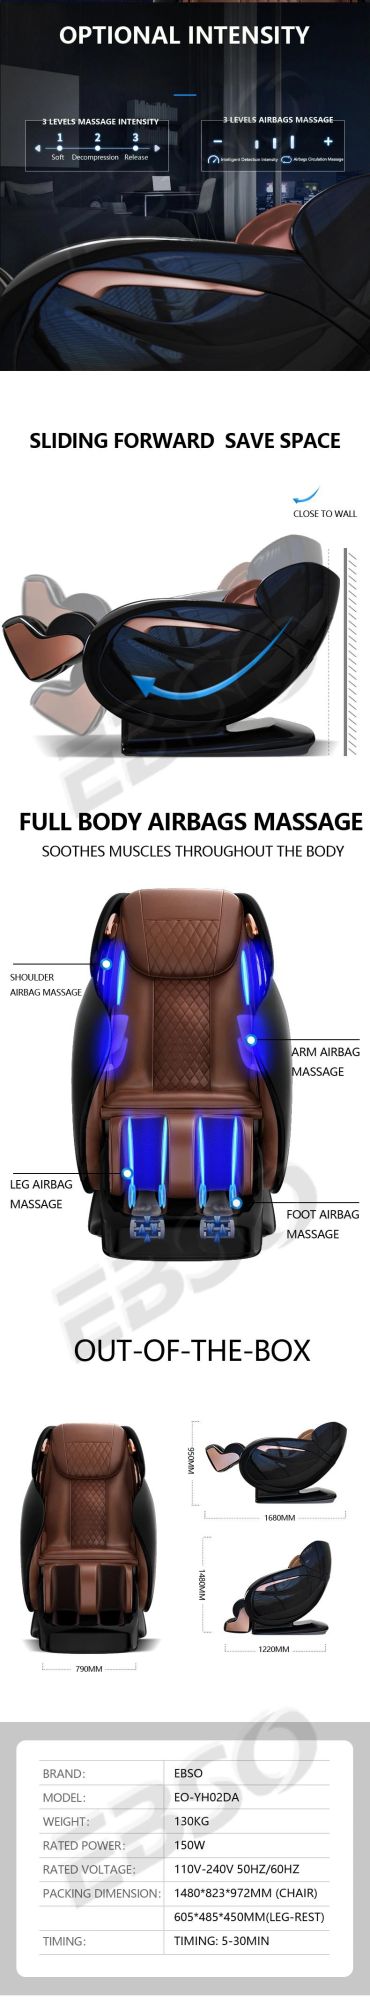 Commercial Full Body Massage Chair 4D Full Abilities Massage Chair Price Device Massage